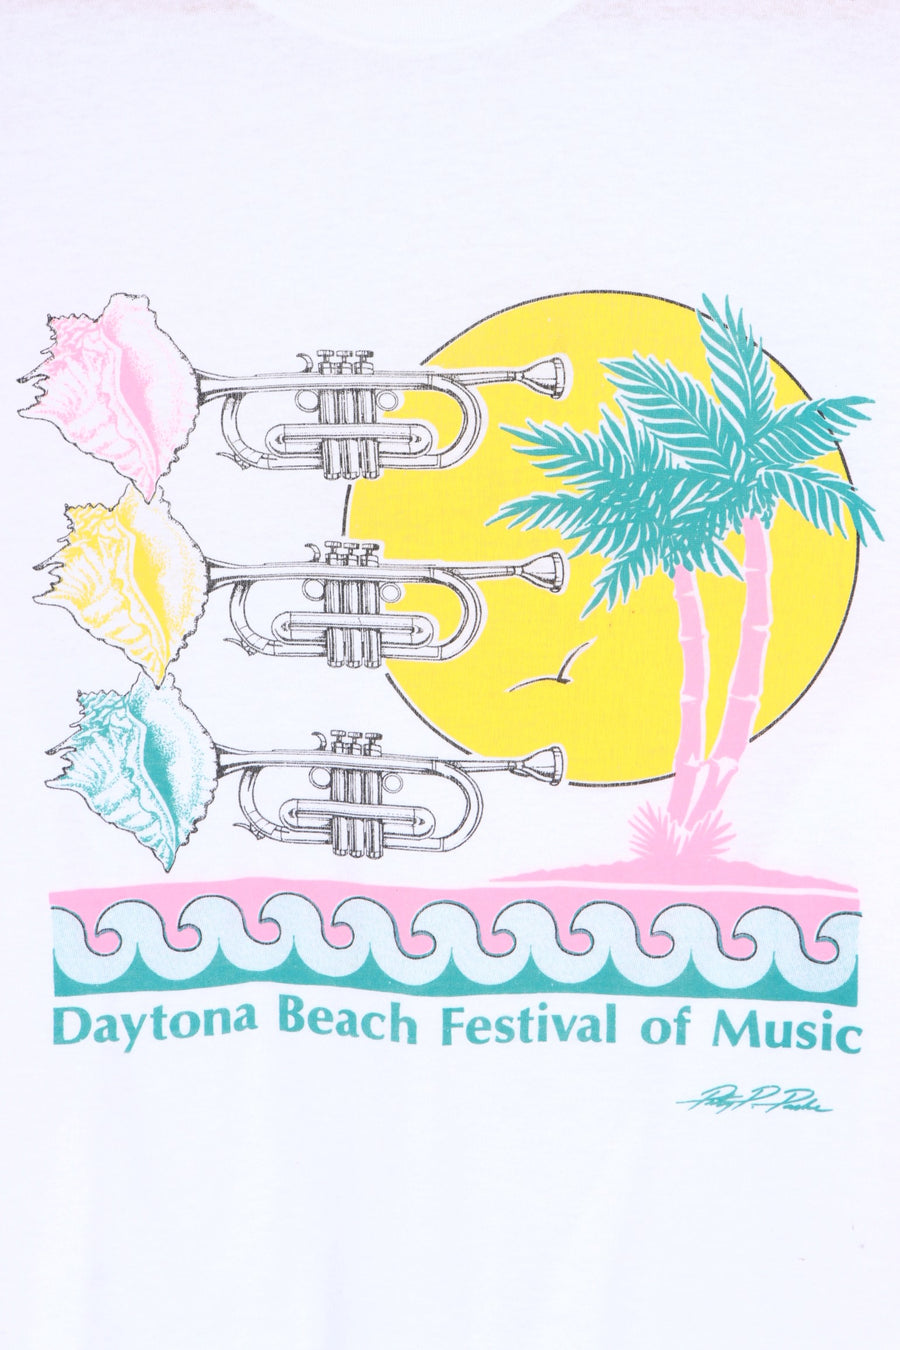 Daytona Beach Music Festival Single Stitch T-Shirt USA Made (L)